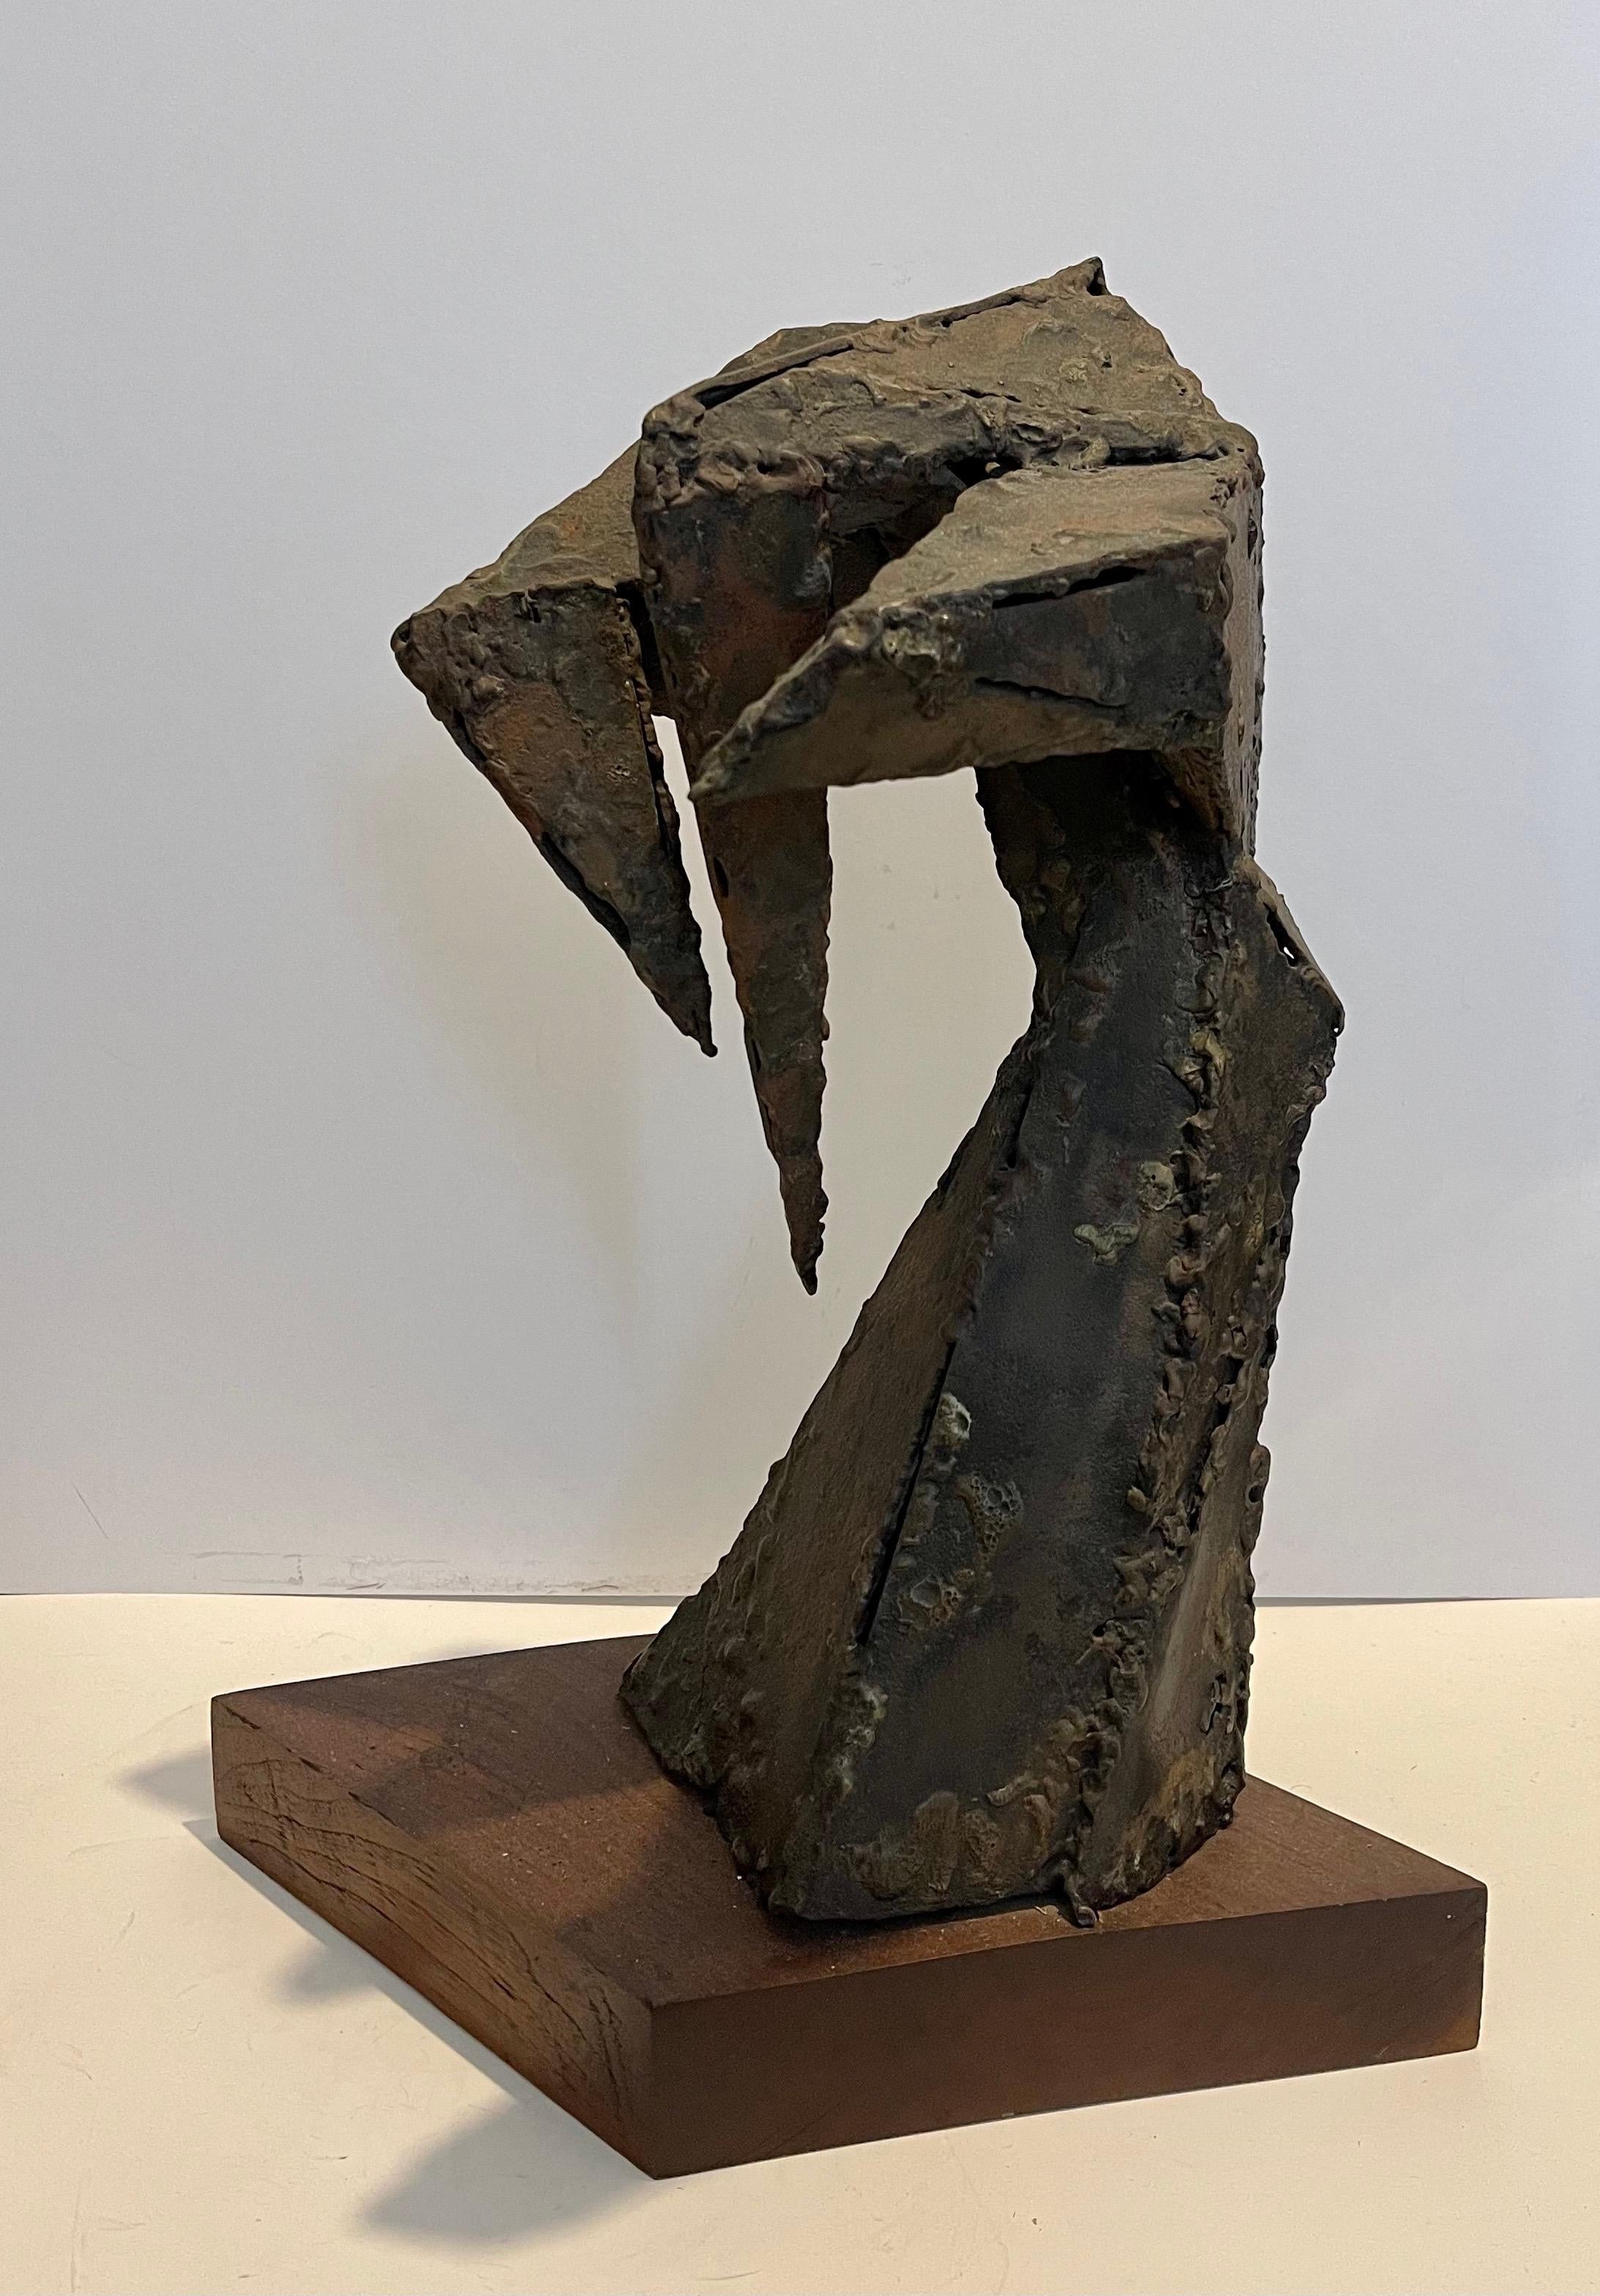 Abstrakt-expressionistische biomorphe geschweißte Metallskulptur, Abstrakt-expressionistische 